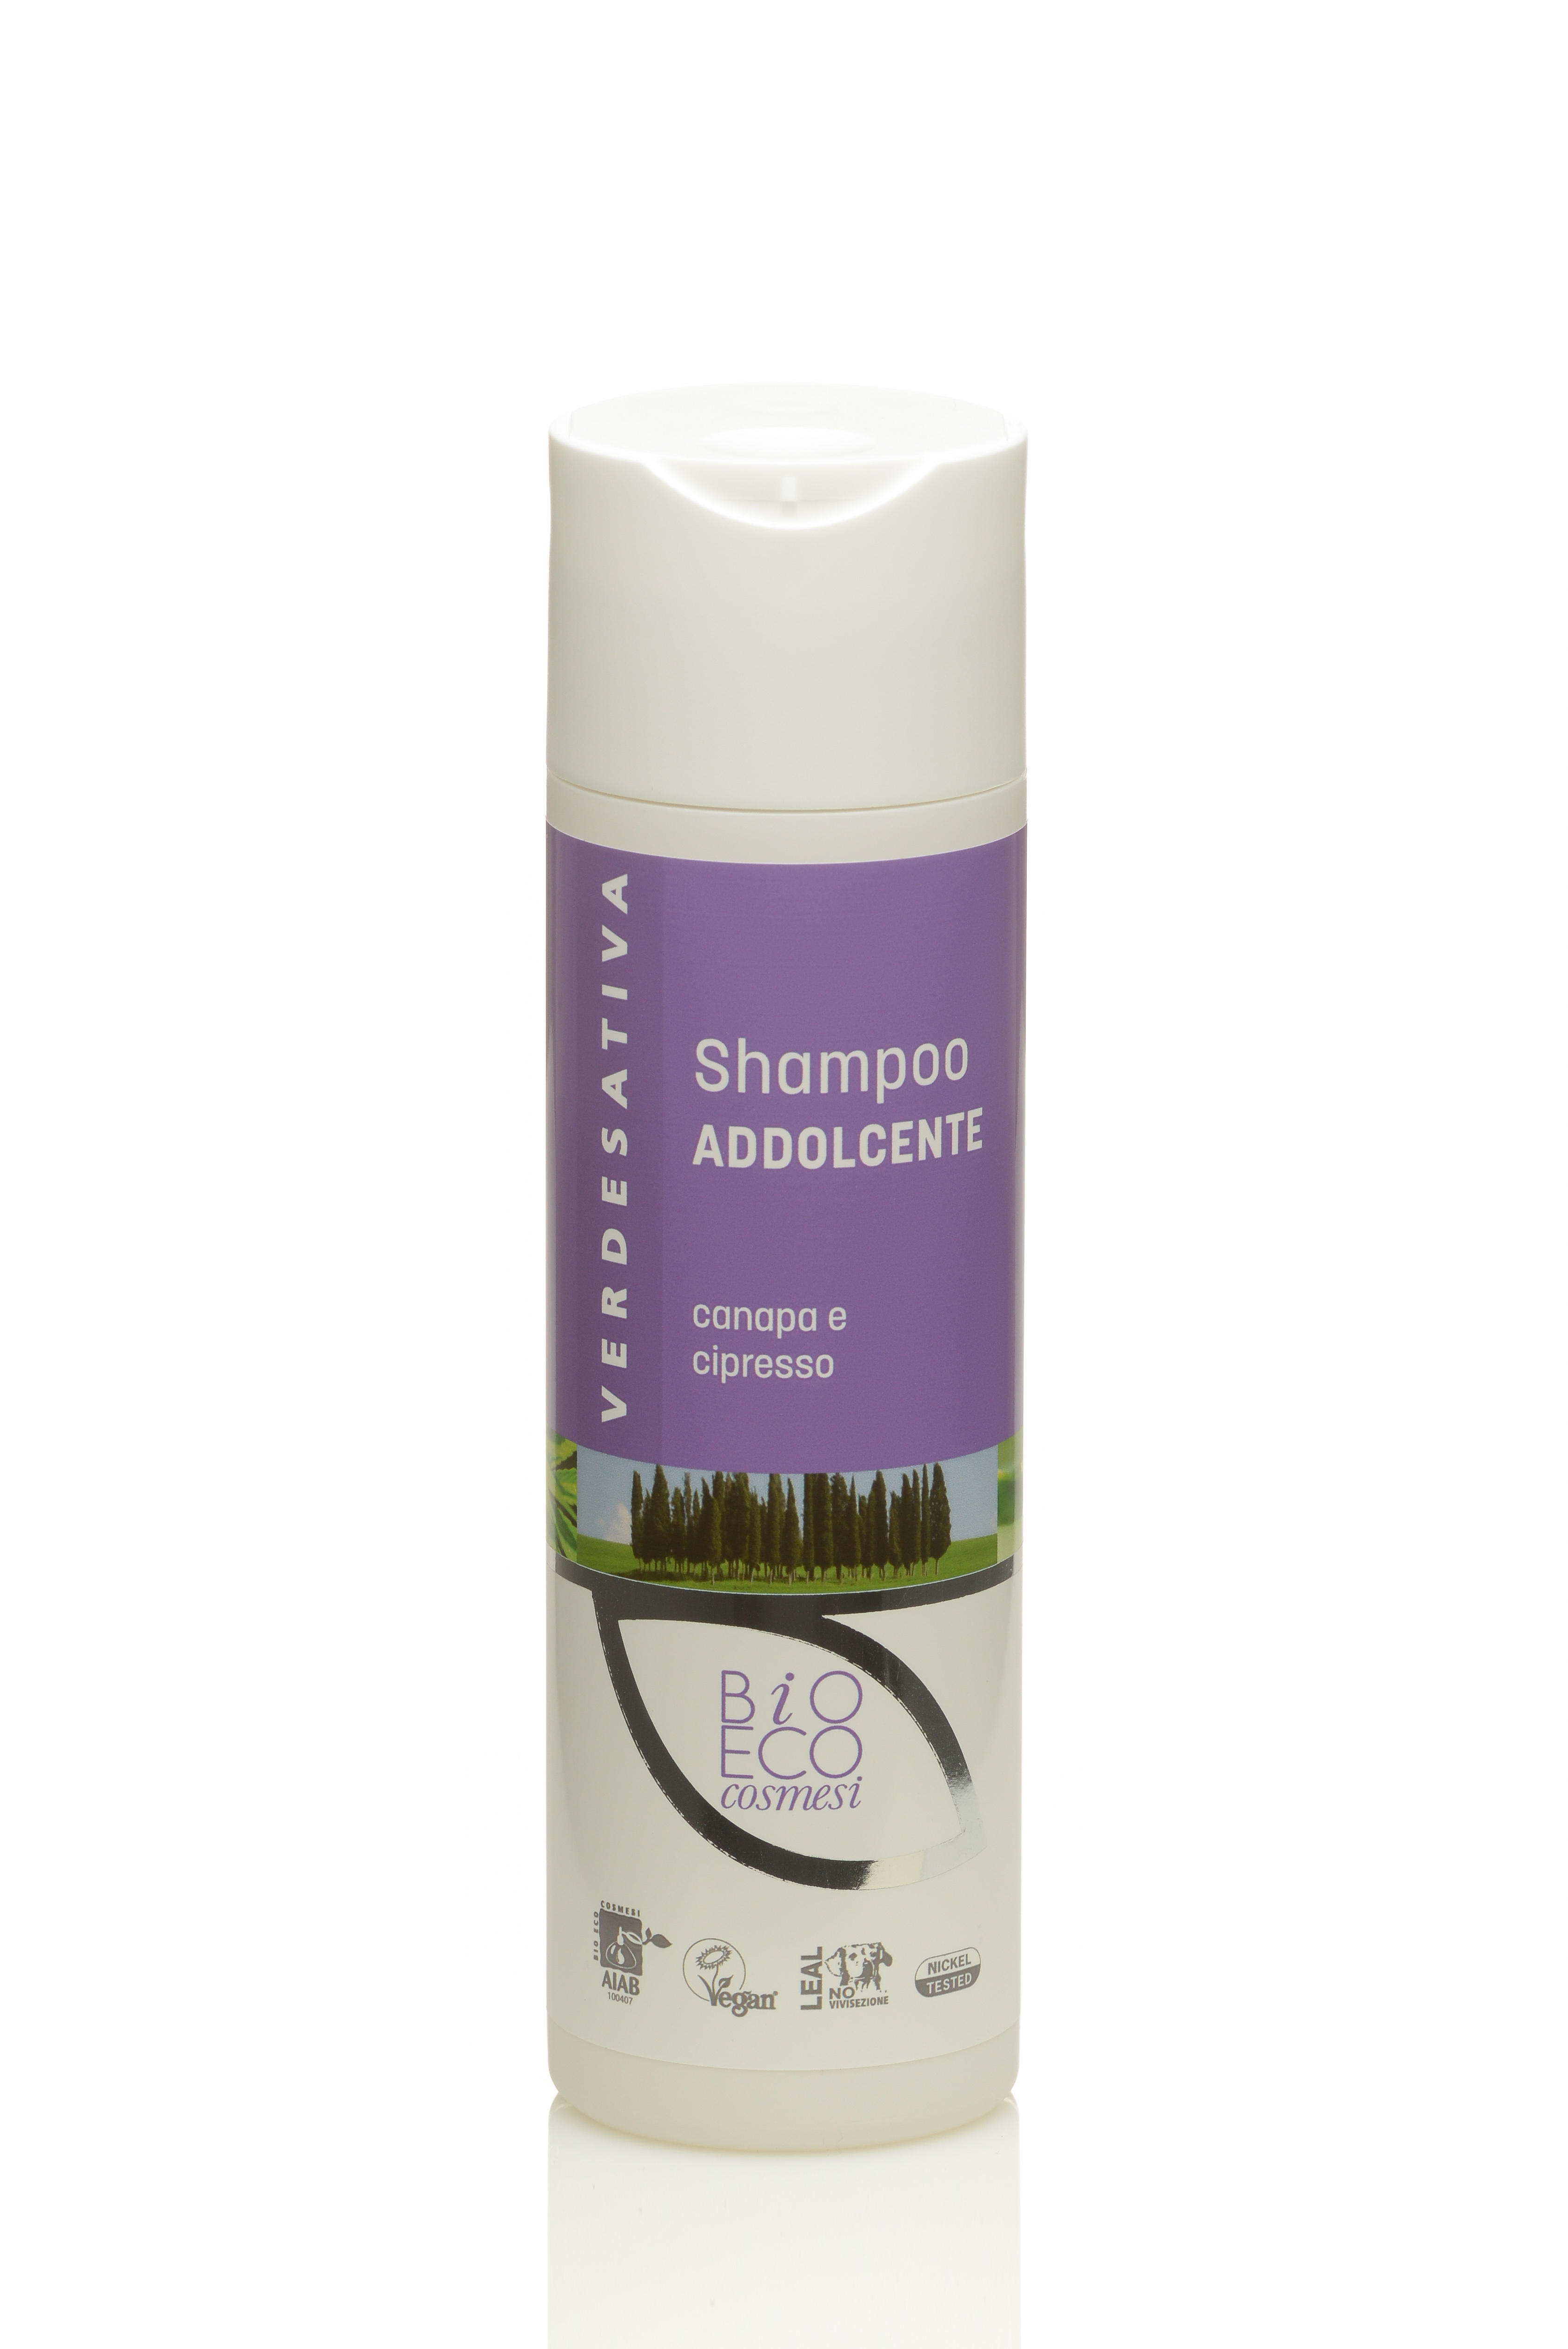 Shampoo addolcente al cipresso 100% naturale e bio degradabile - 200ml